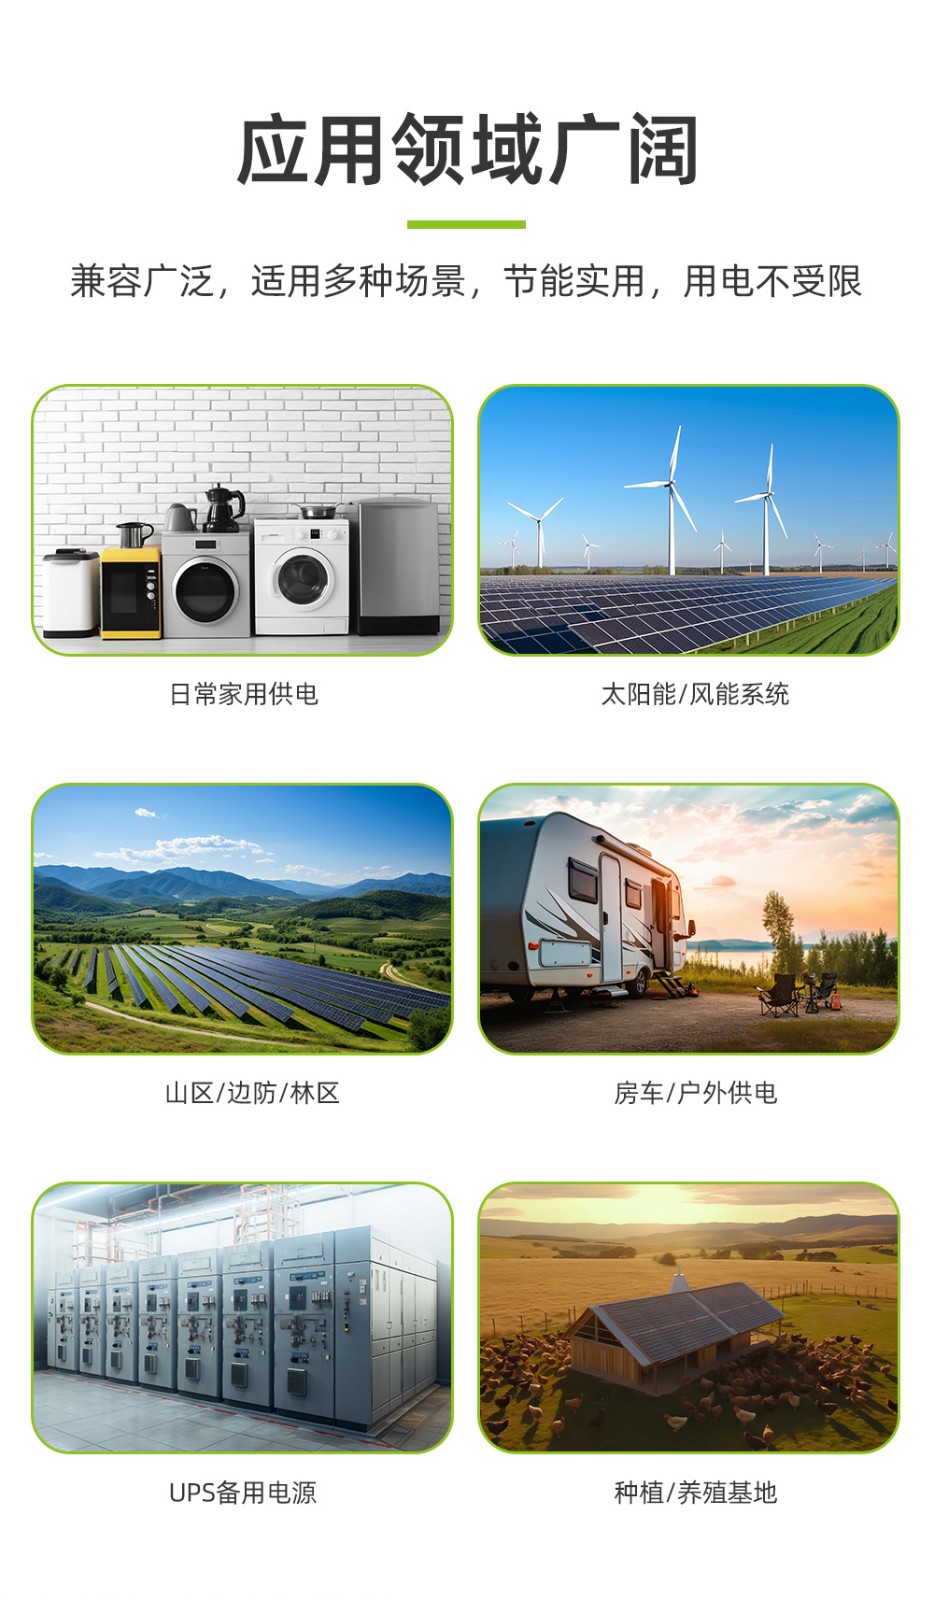 新葡萄新京B500-4 20度电堆叠式太阳能家庭储能电源_06